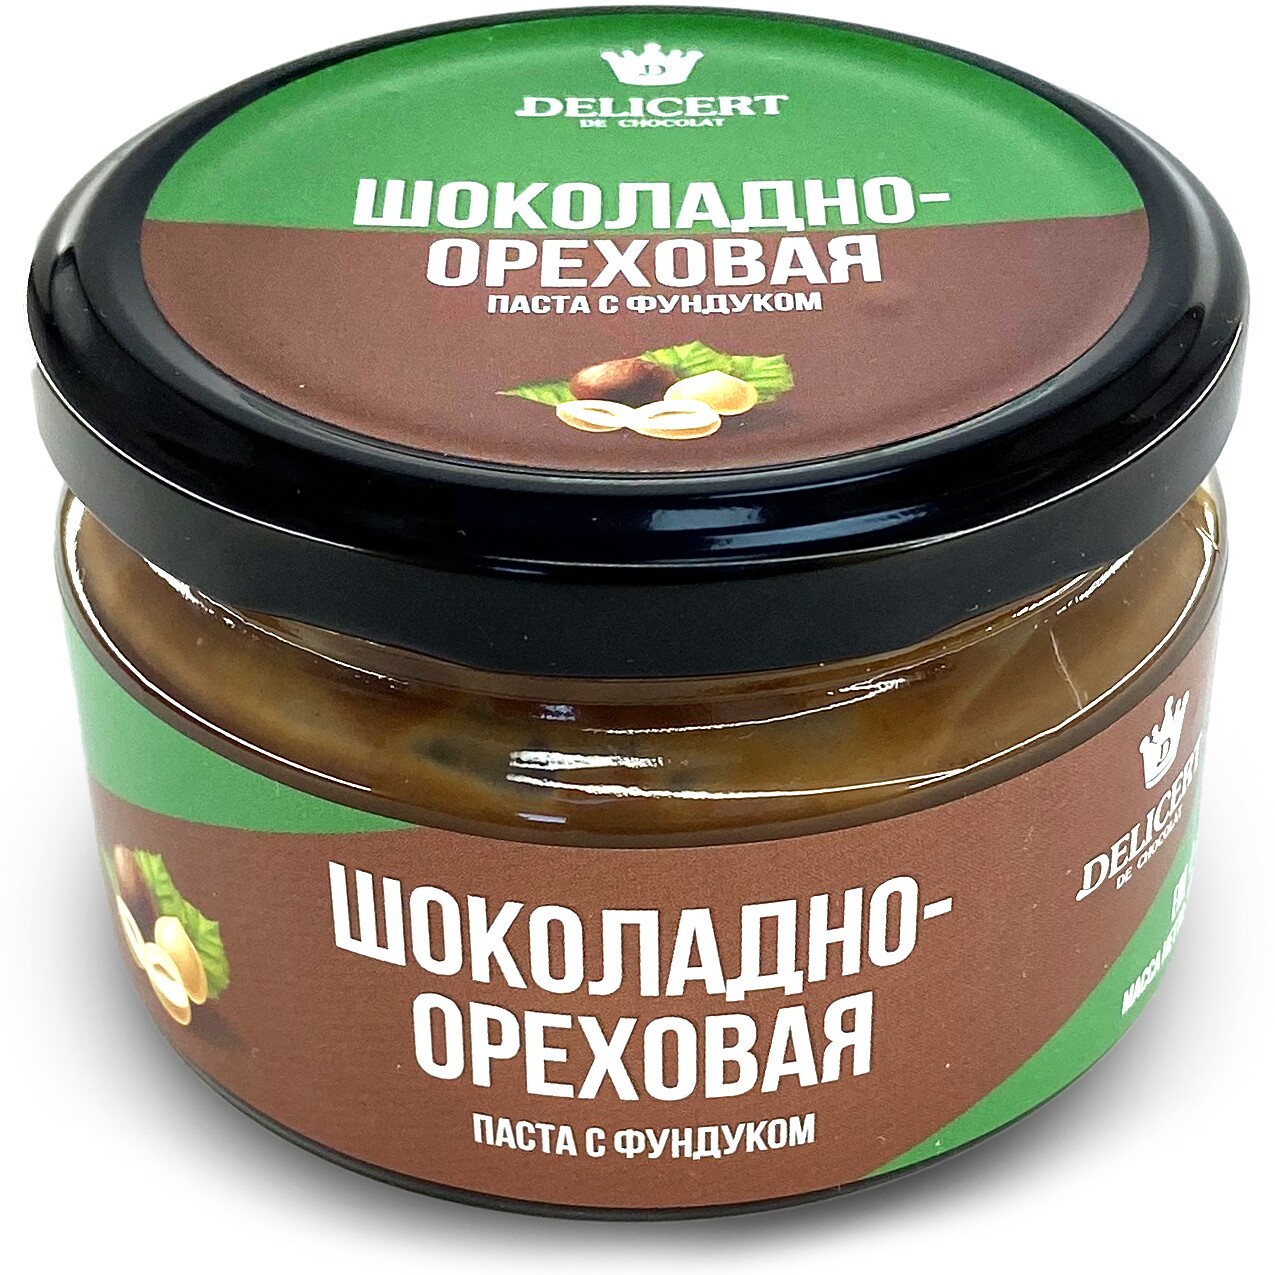 Шоколадно-ореховая паста (с фундуком), 200 гр.